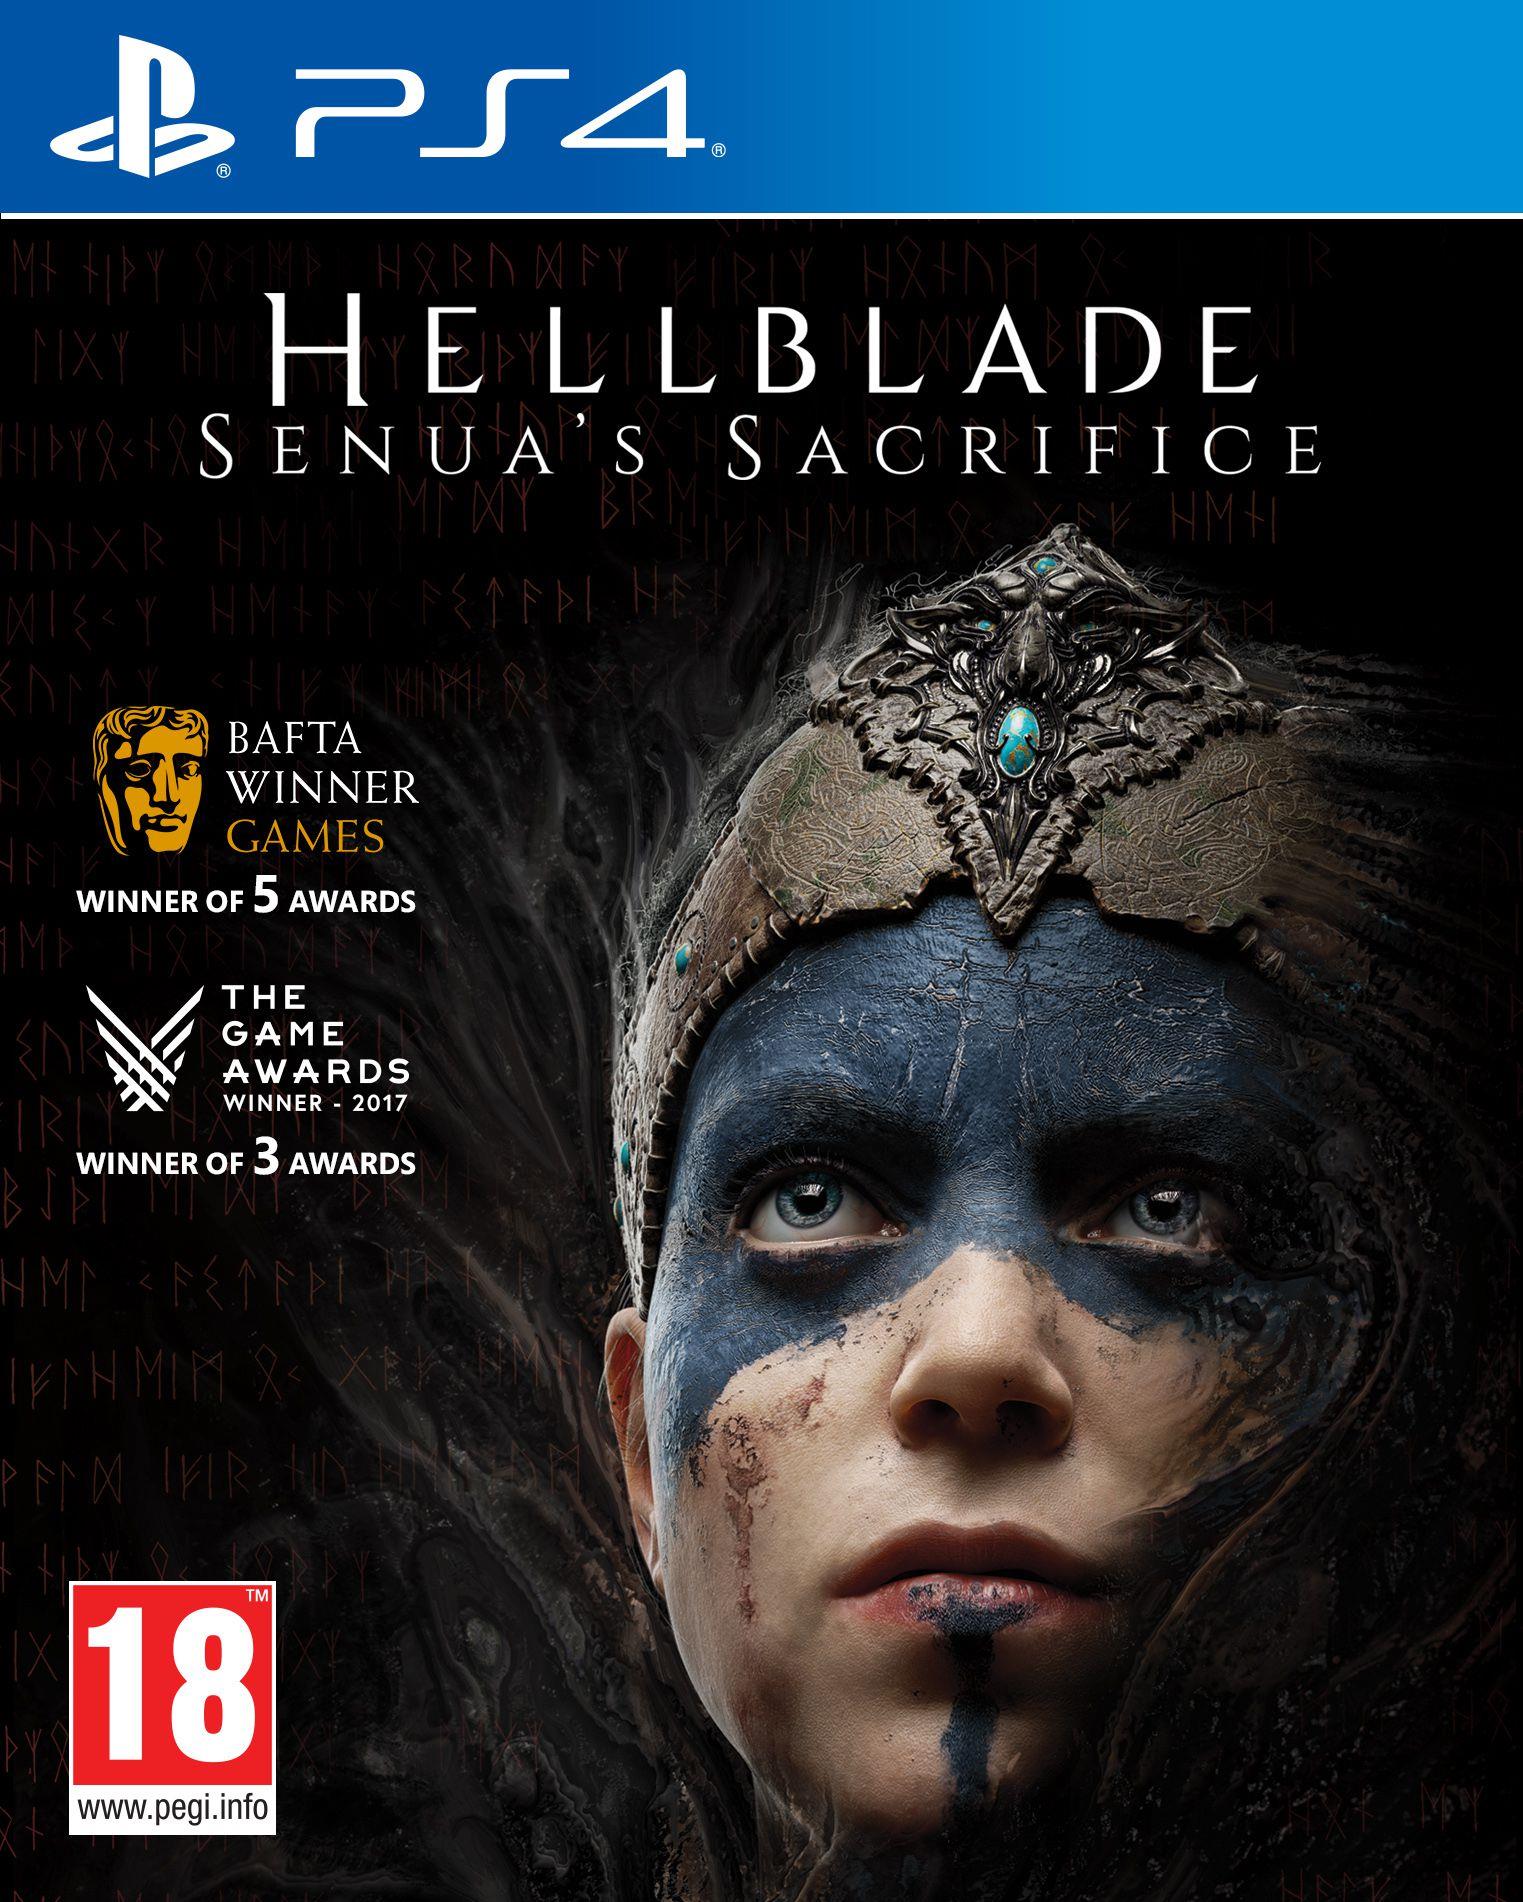 § Hellblade: Senua's Sacrifice